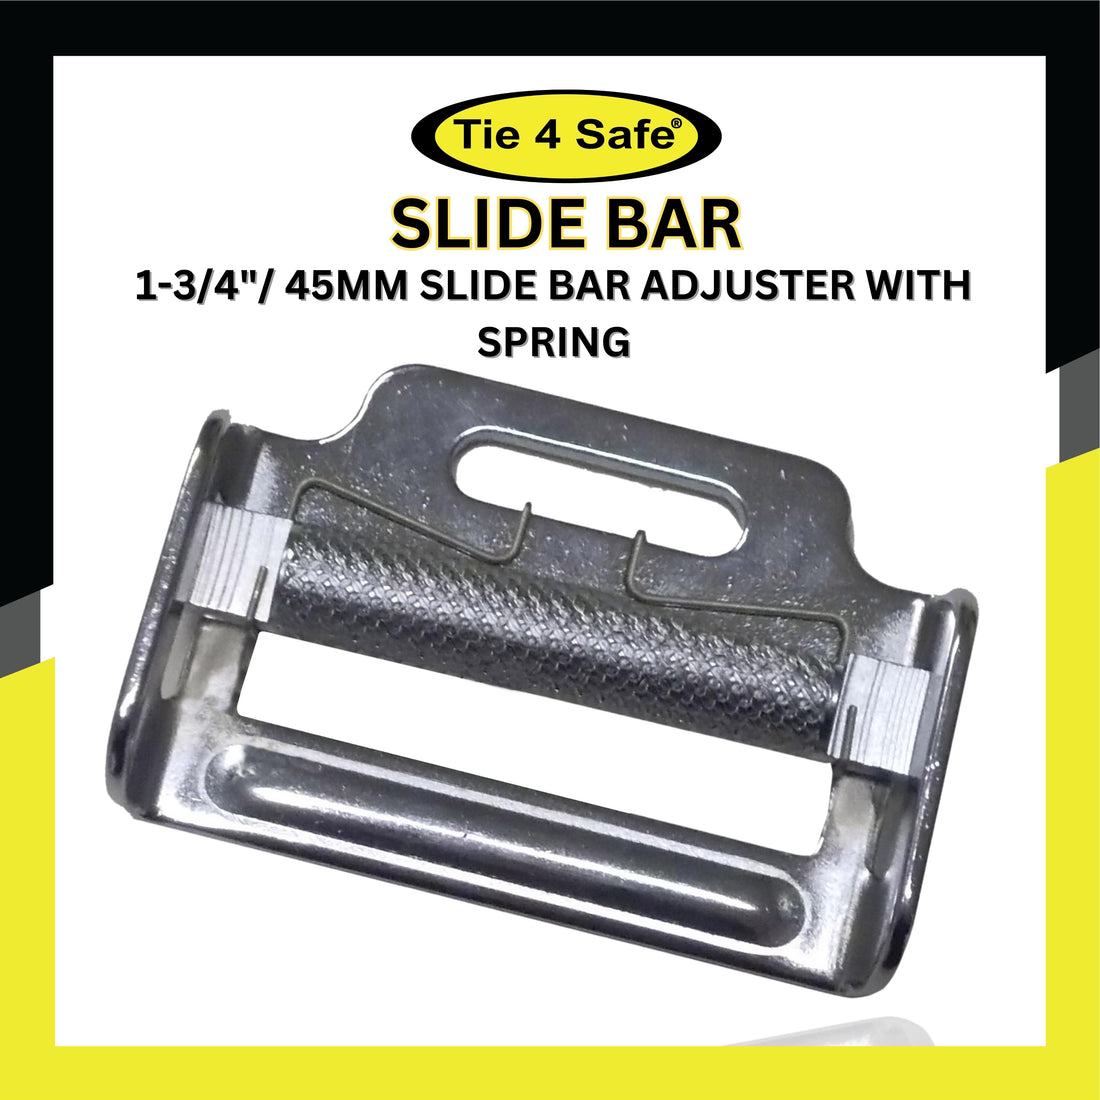 1-3/4"/ 45mm Slide Bar